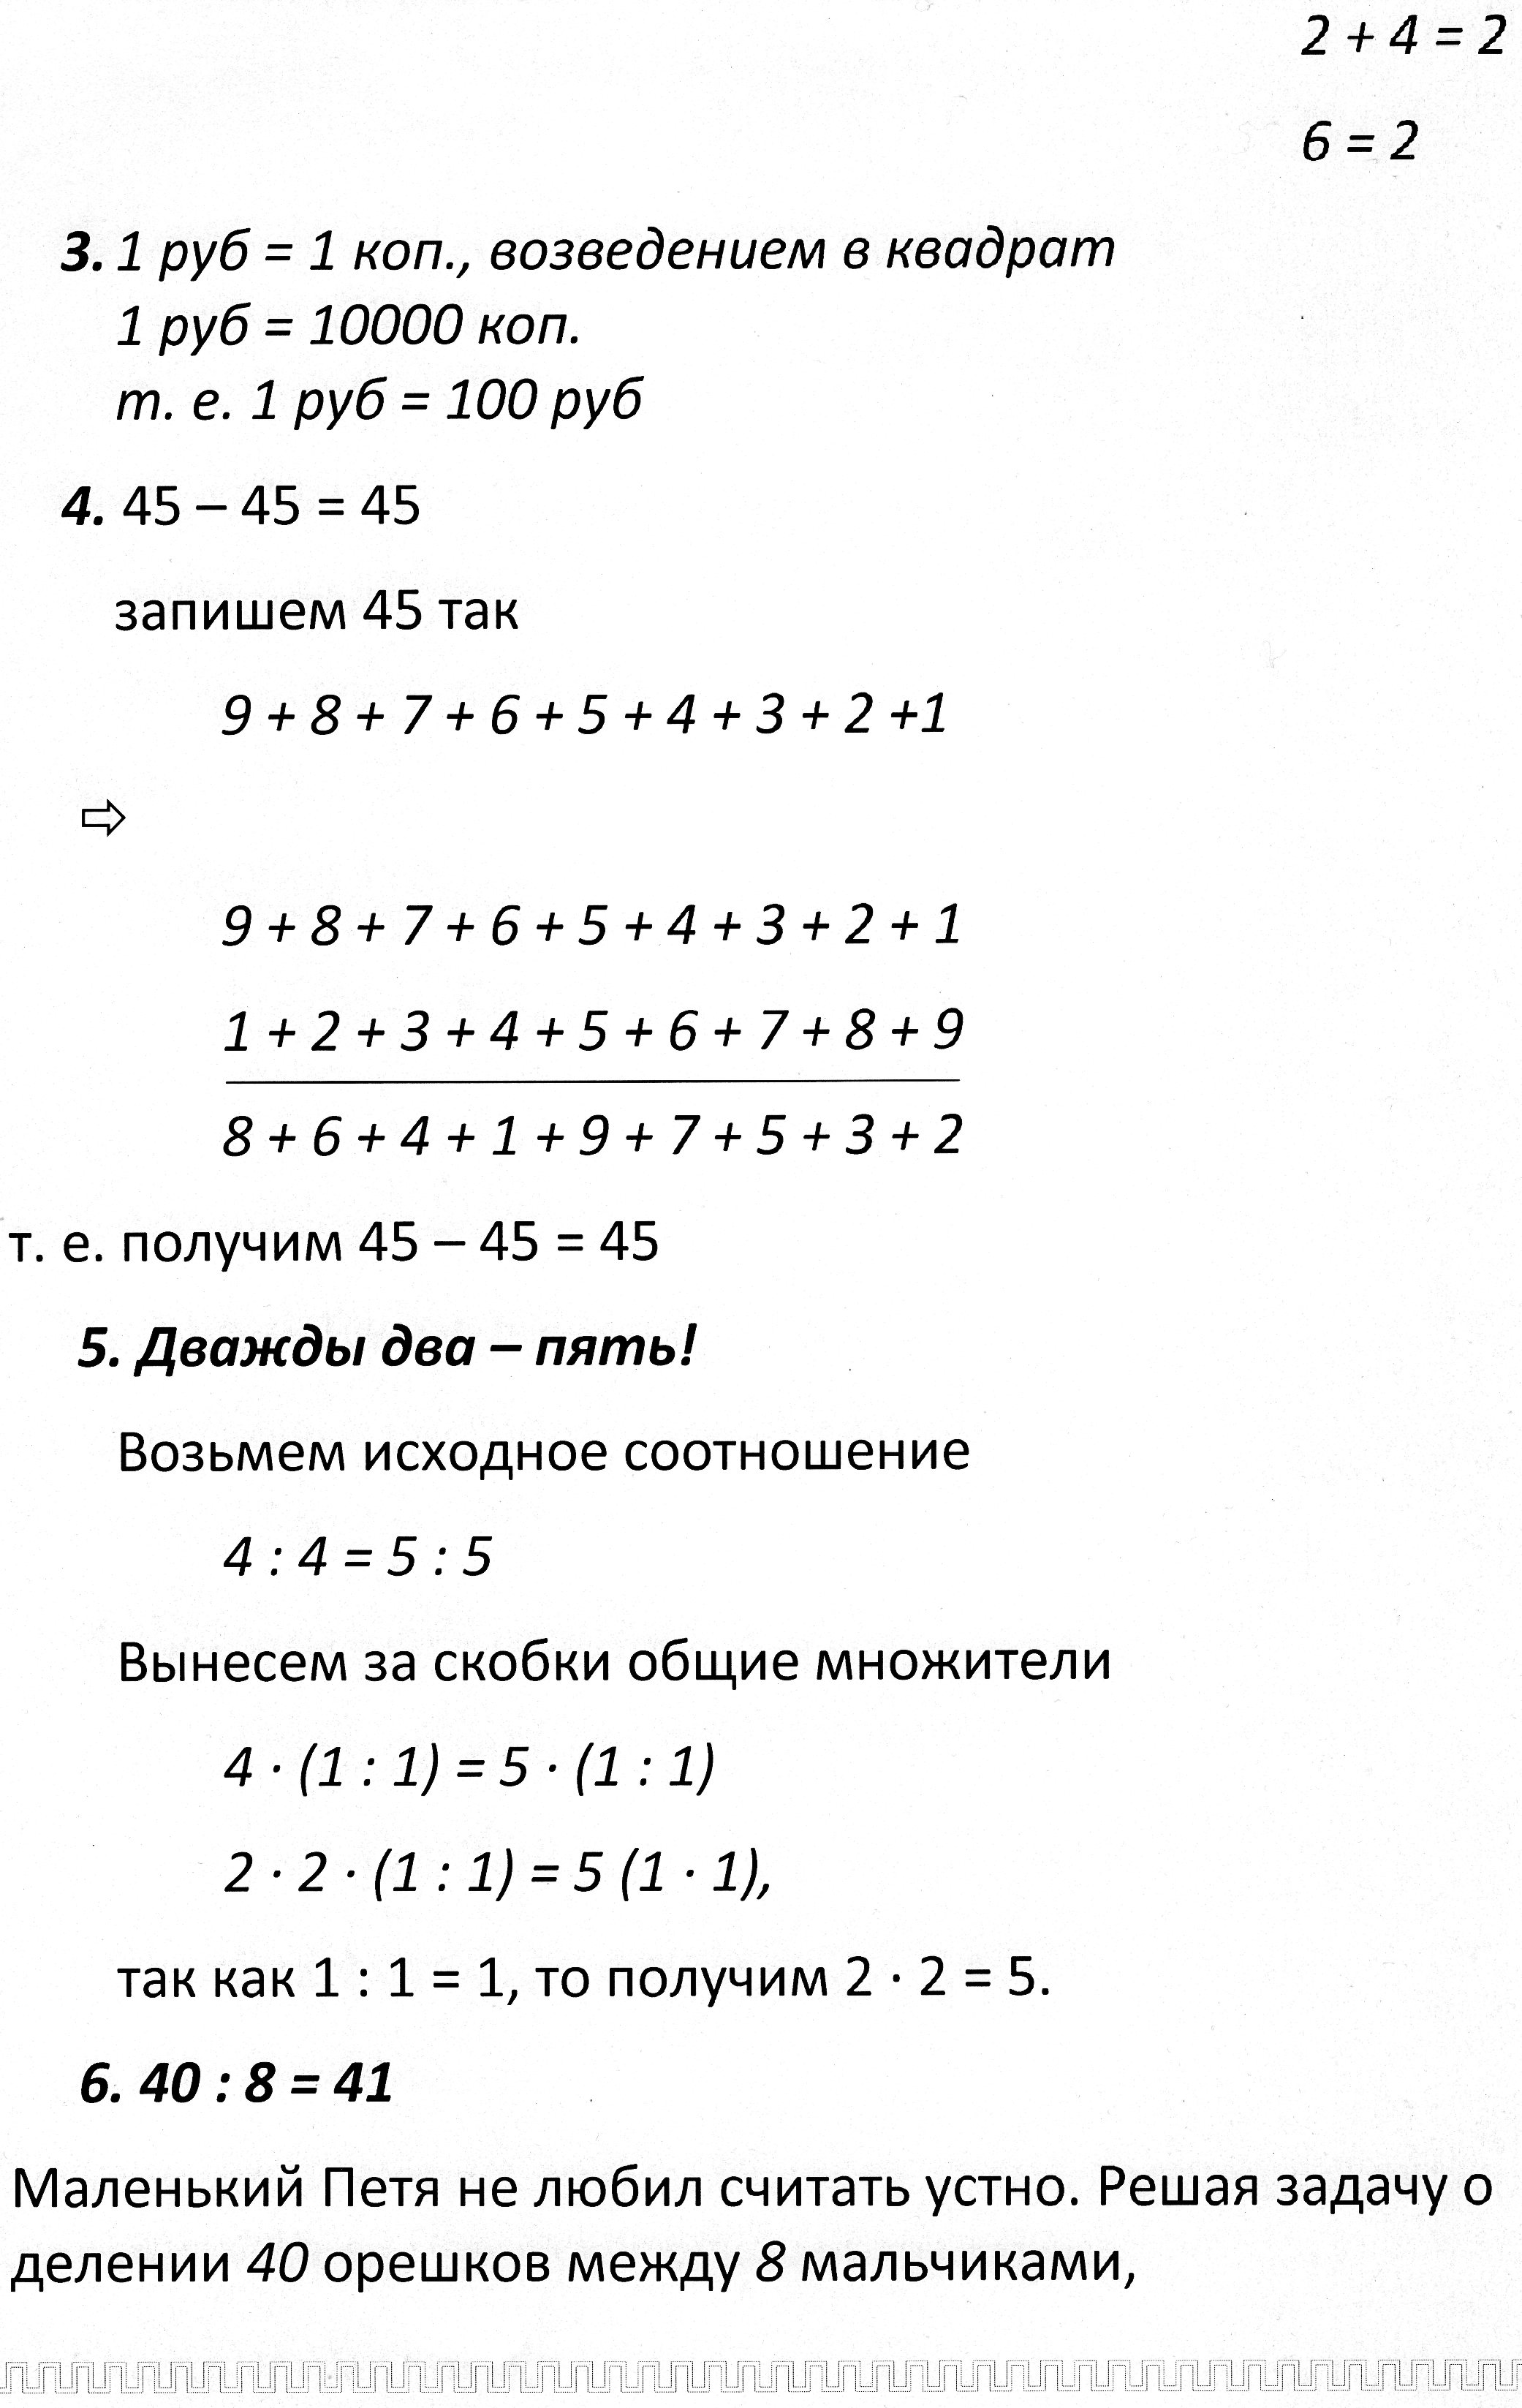 Урок по математике на тему Софизм (7 класс)